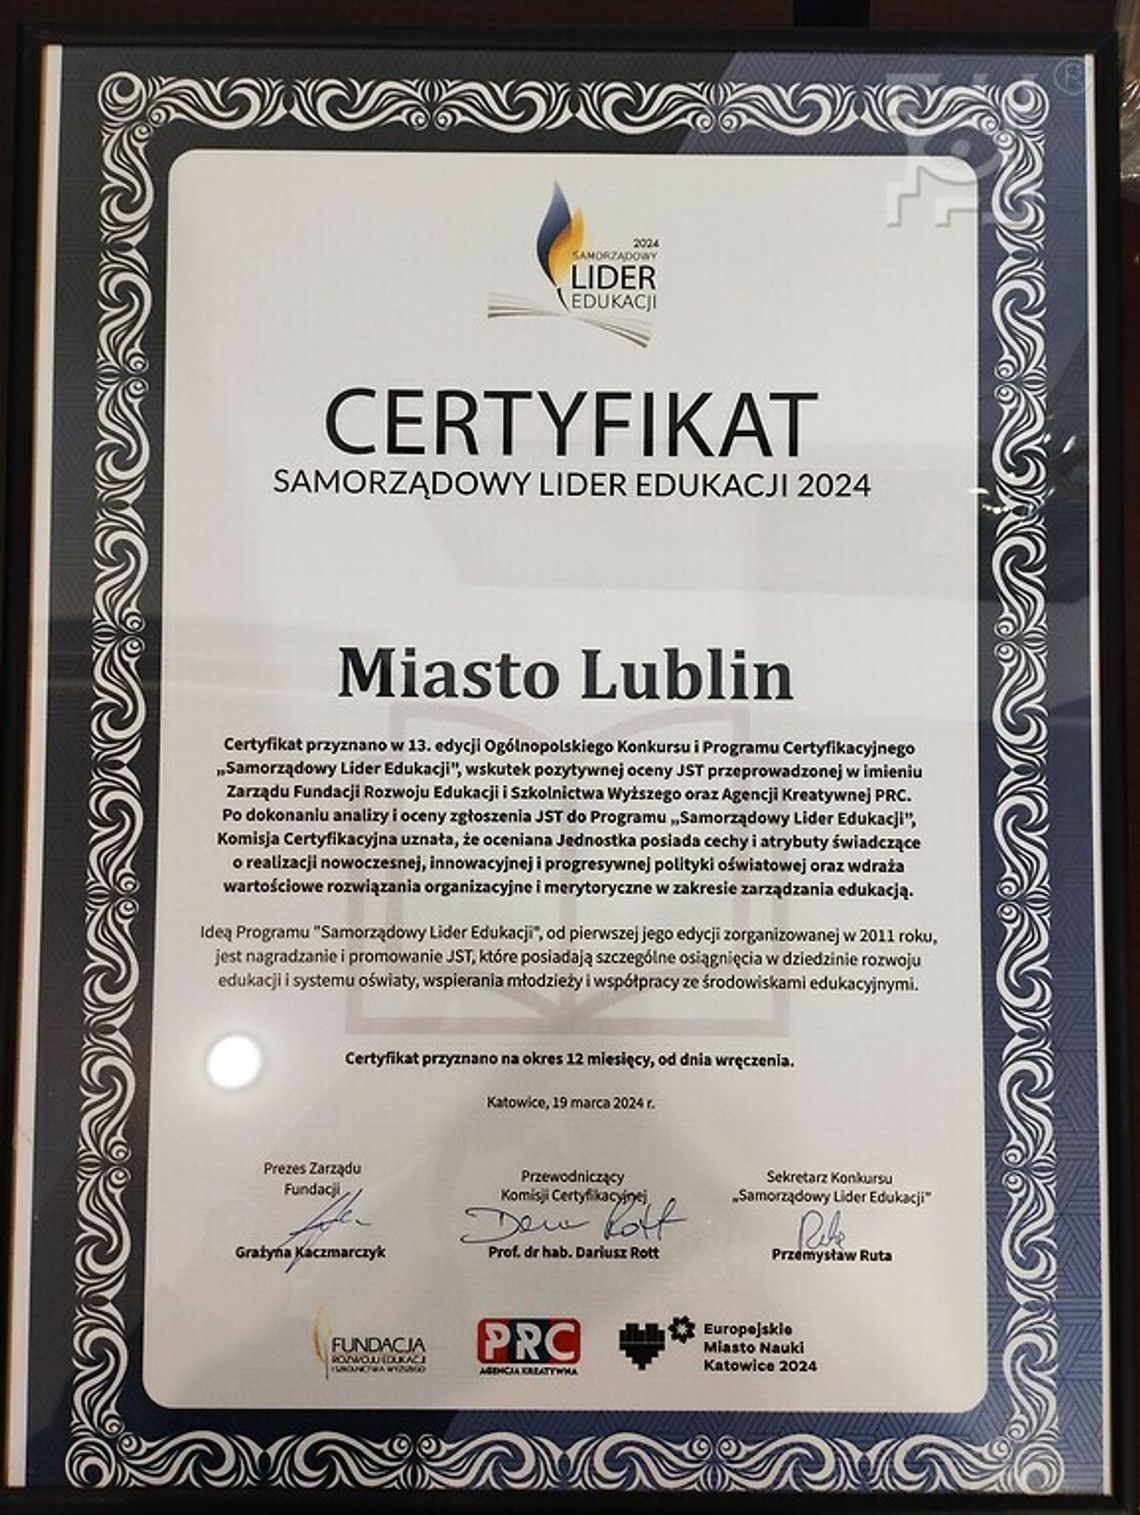 Certyfikat Samorządowy Lider Edukacji po raz 13. dla Lublina